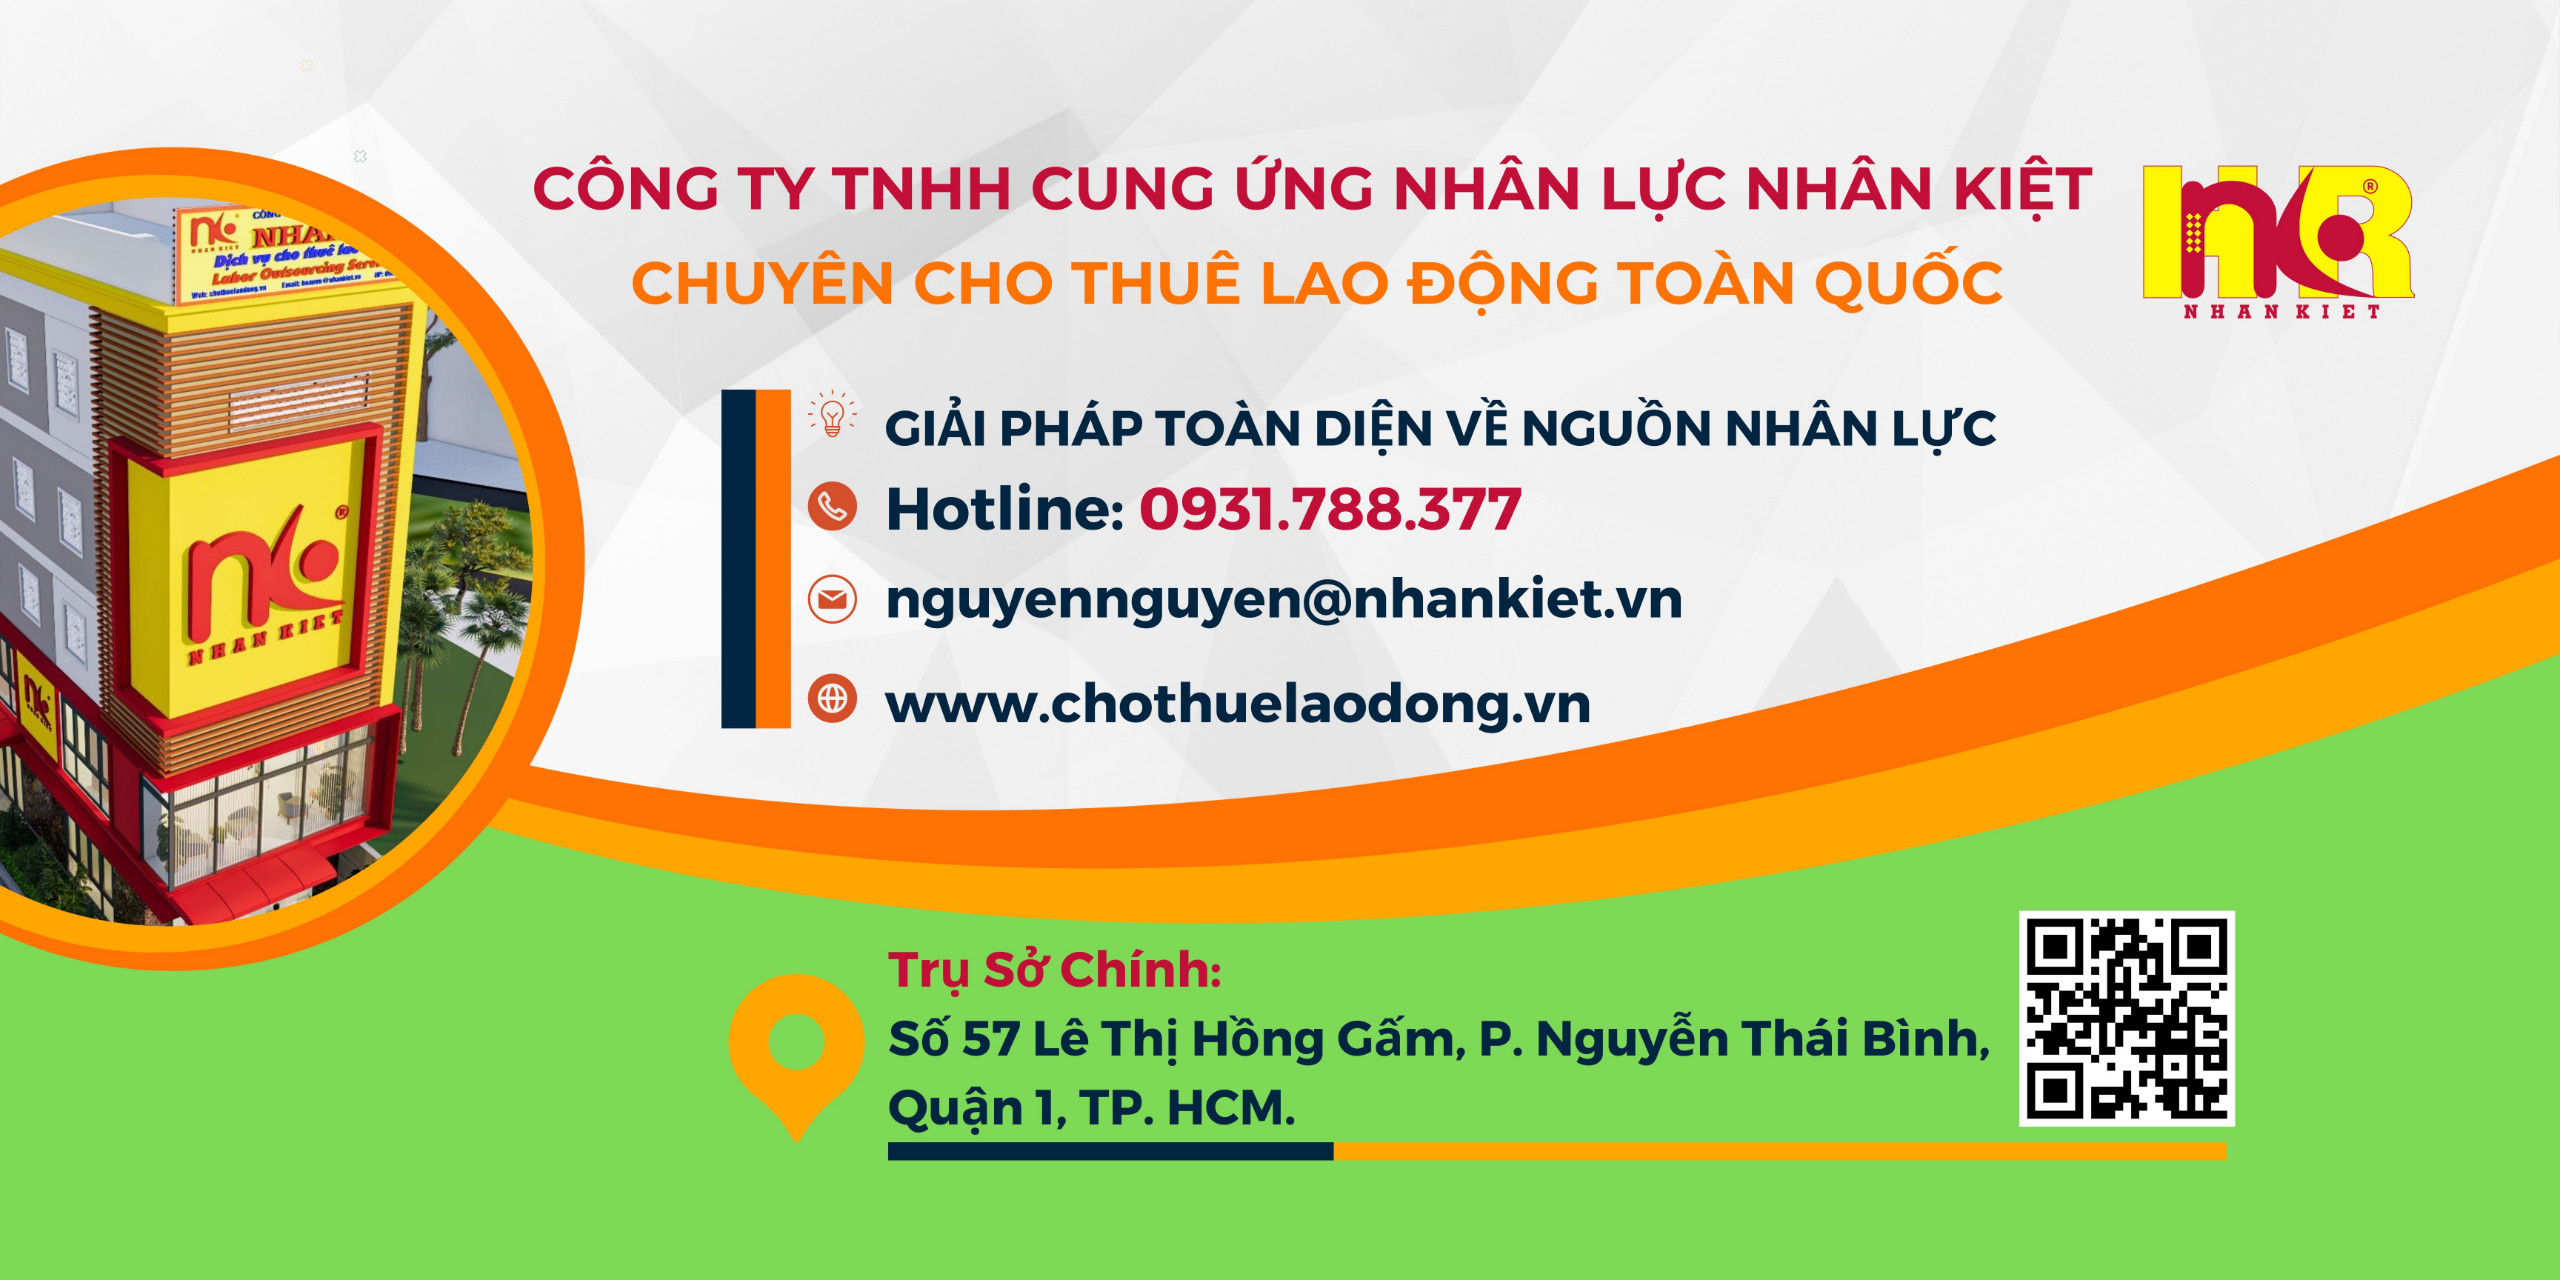 Team Hồ Chí Minh 2 - Cty Nhân Kiệt